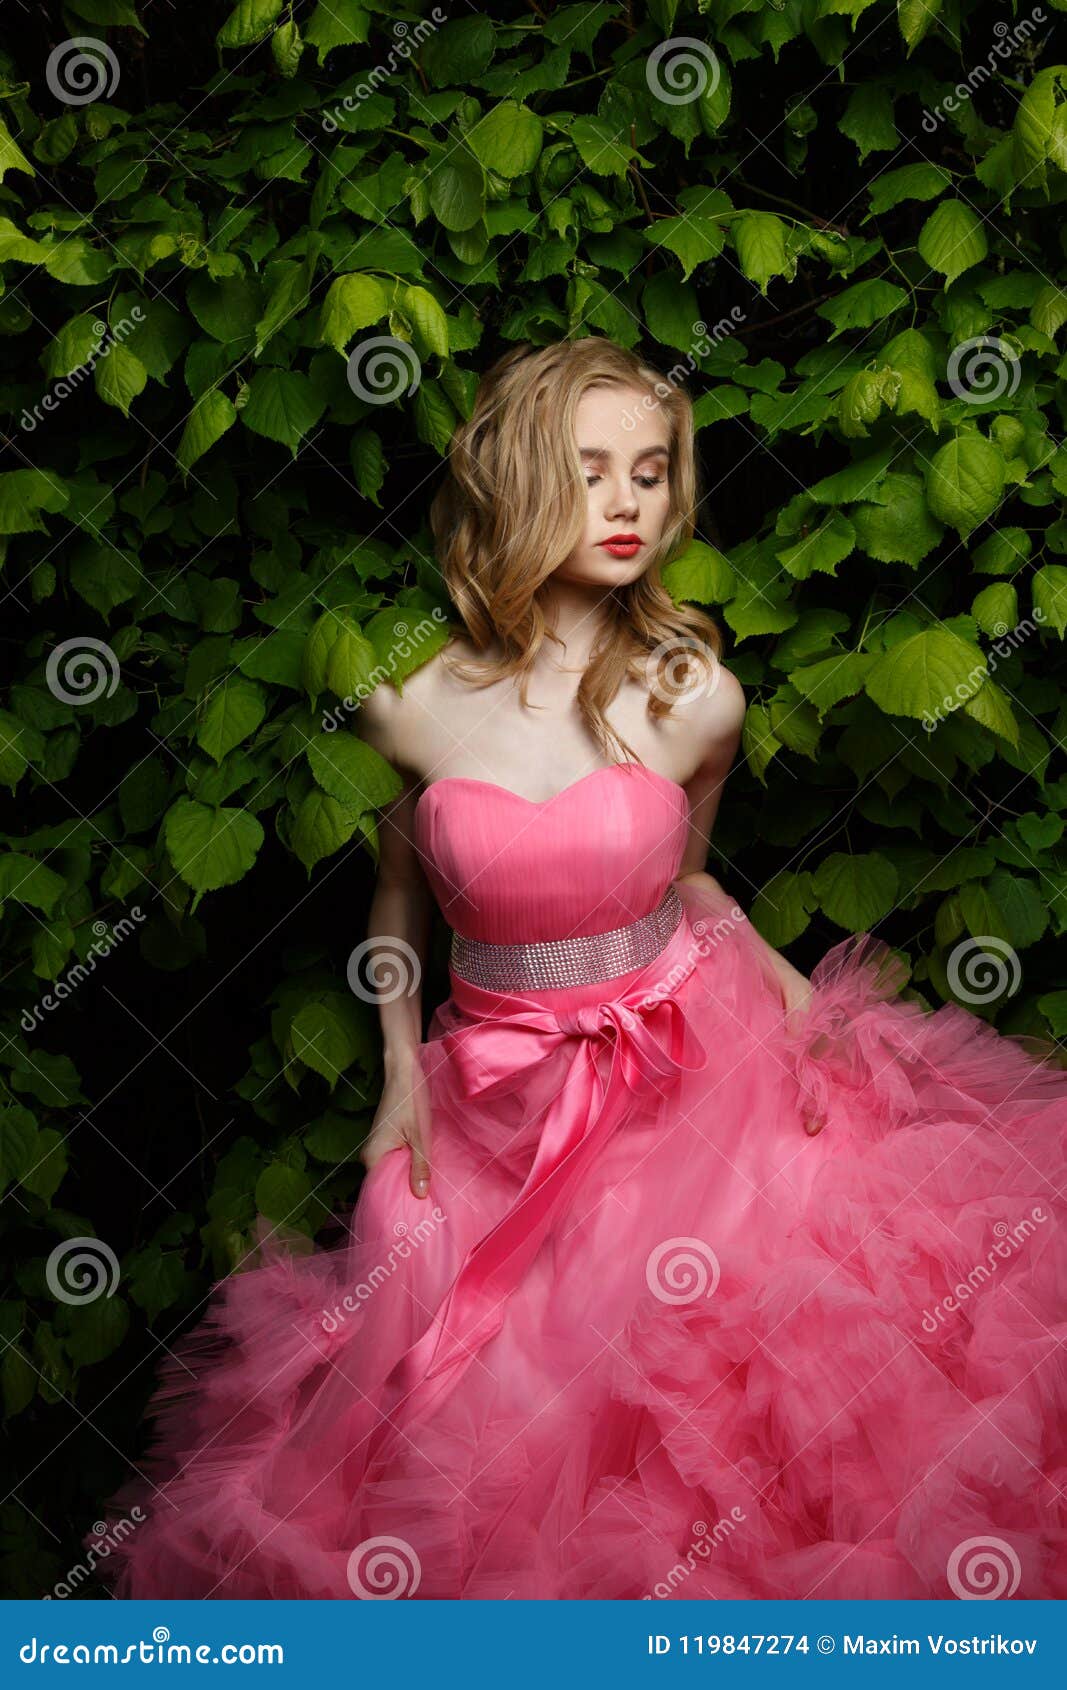 Beautiful Girl Blue Long Dress Posing Stock Photo 1229245363 | Shutterstock